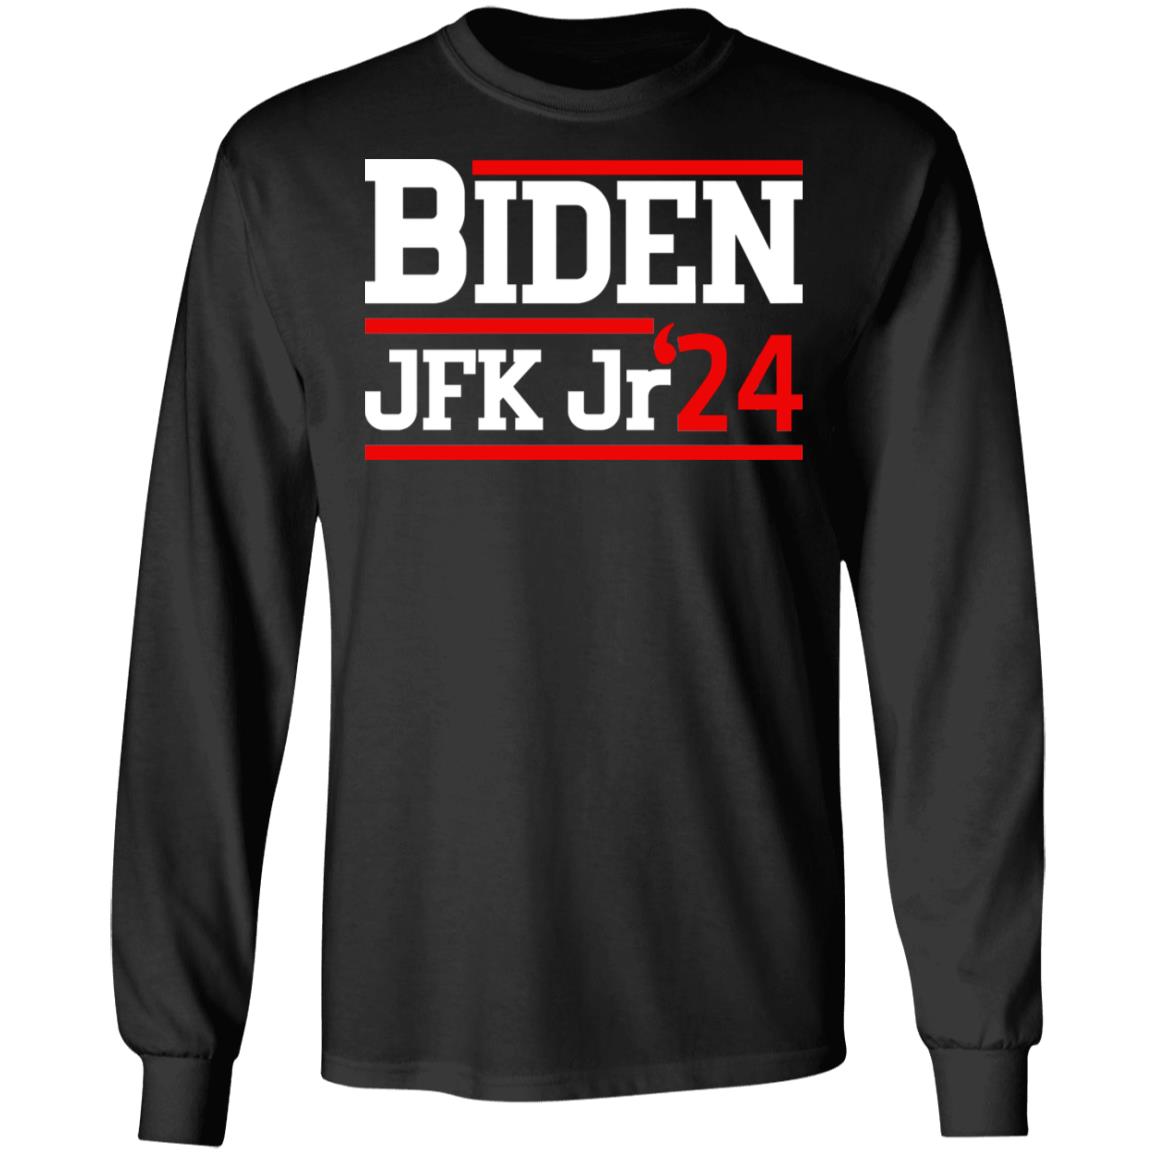 Biden JFK Jr 2024 Shirt